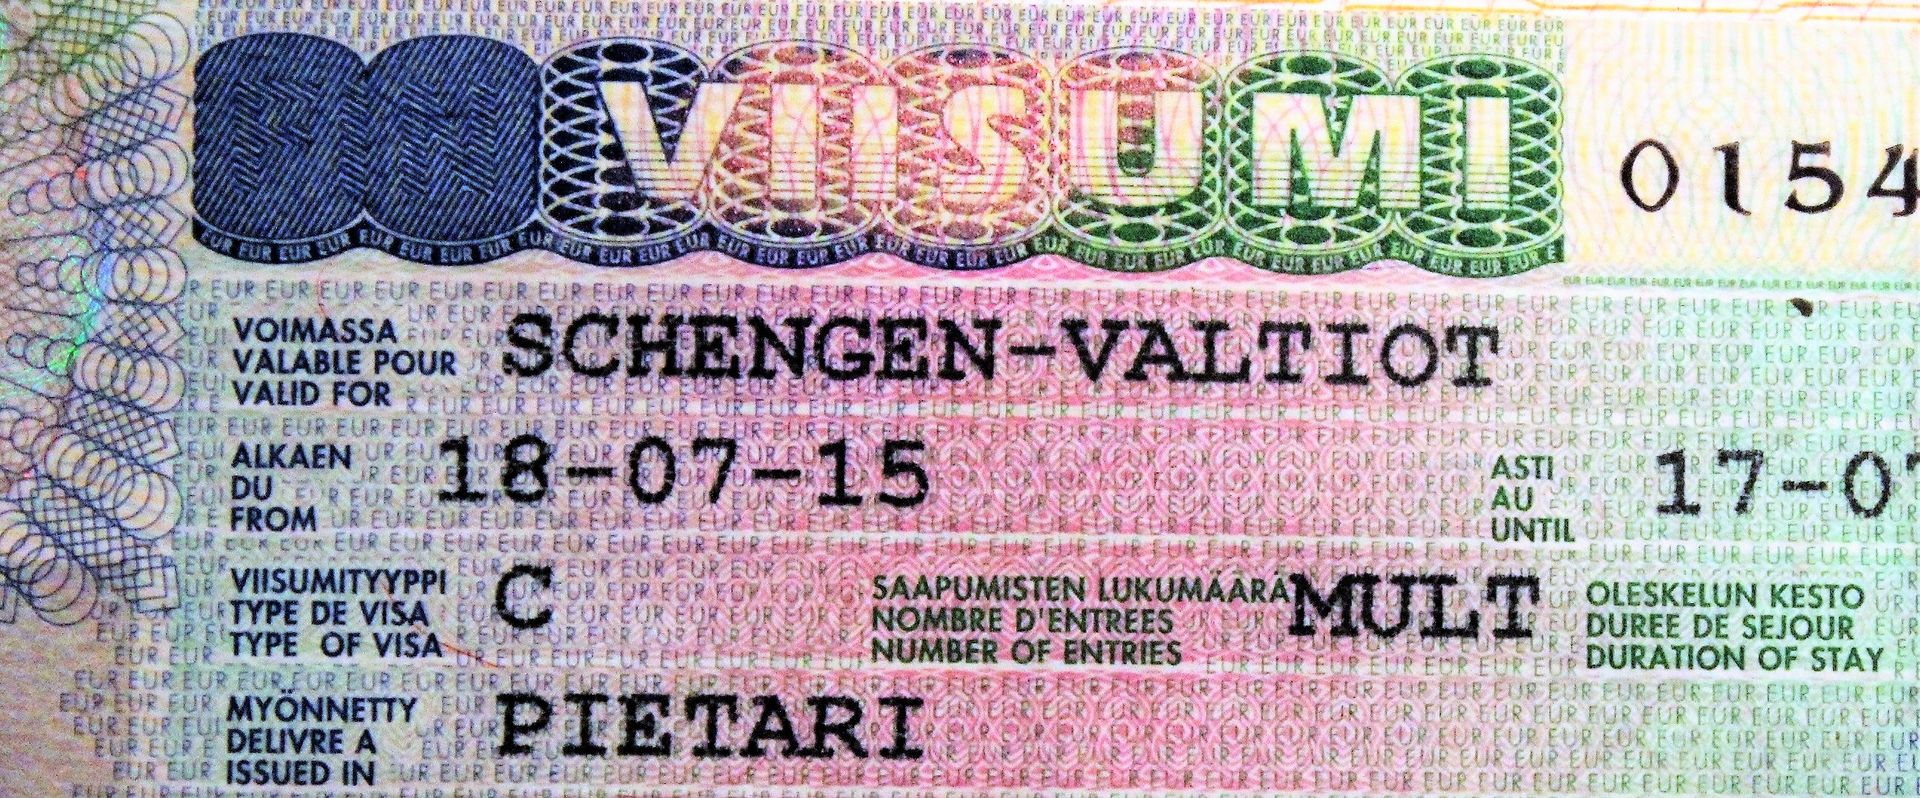 Виза в финляндию: виды виз и необходимые документы, стоимость оформления и сроки получения как получить визу в финляндию?